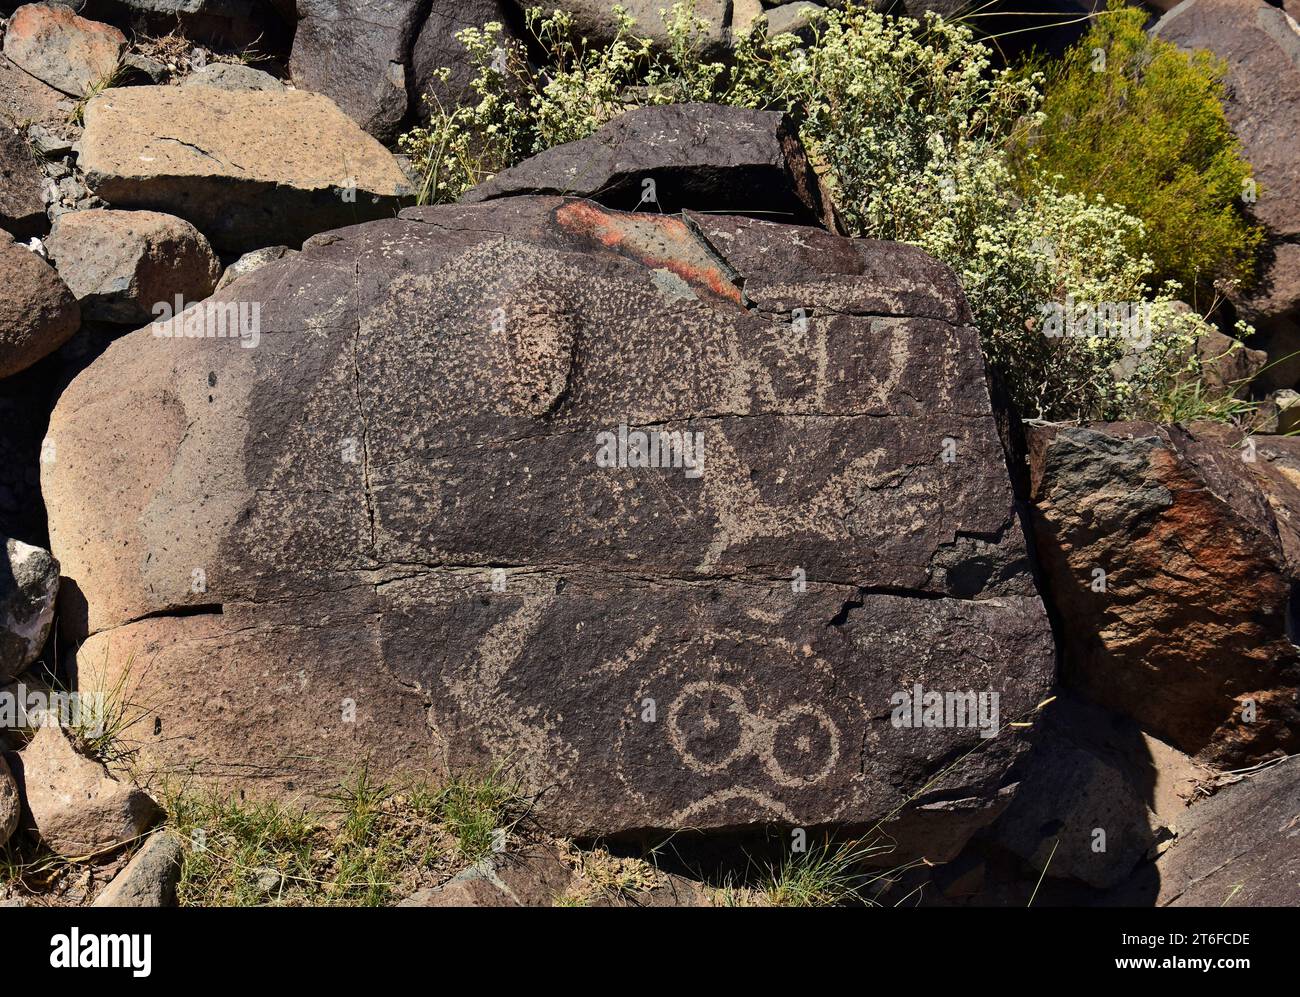 the ancient native jornada morgollon petroglyphs  on a sunny day at three rivers petroglyph site, near tularosa, new mexico Stock Photo